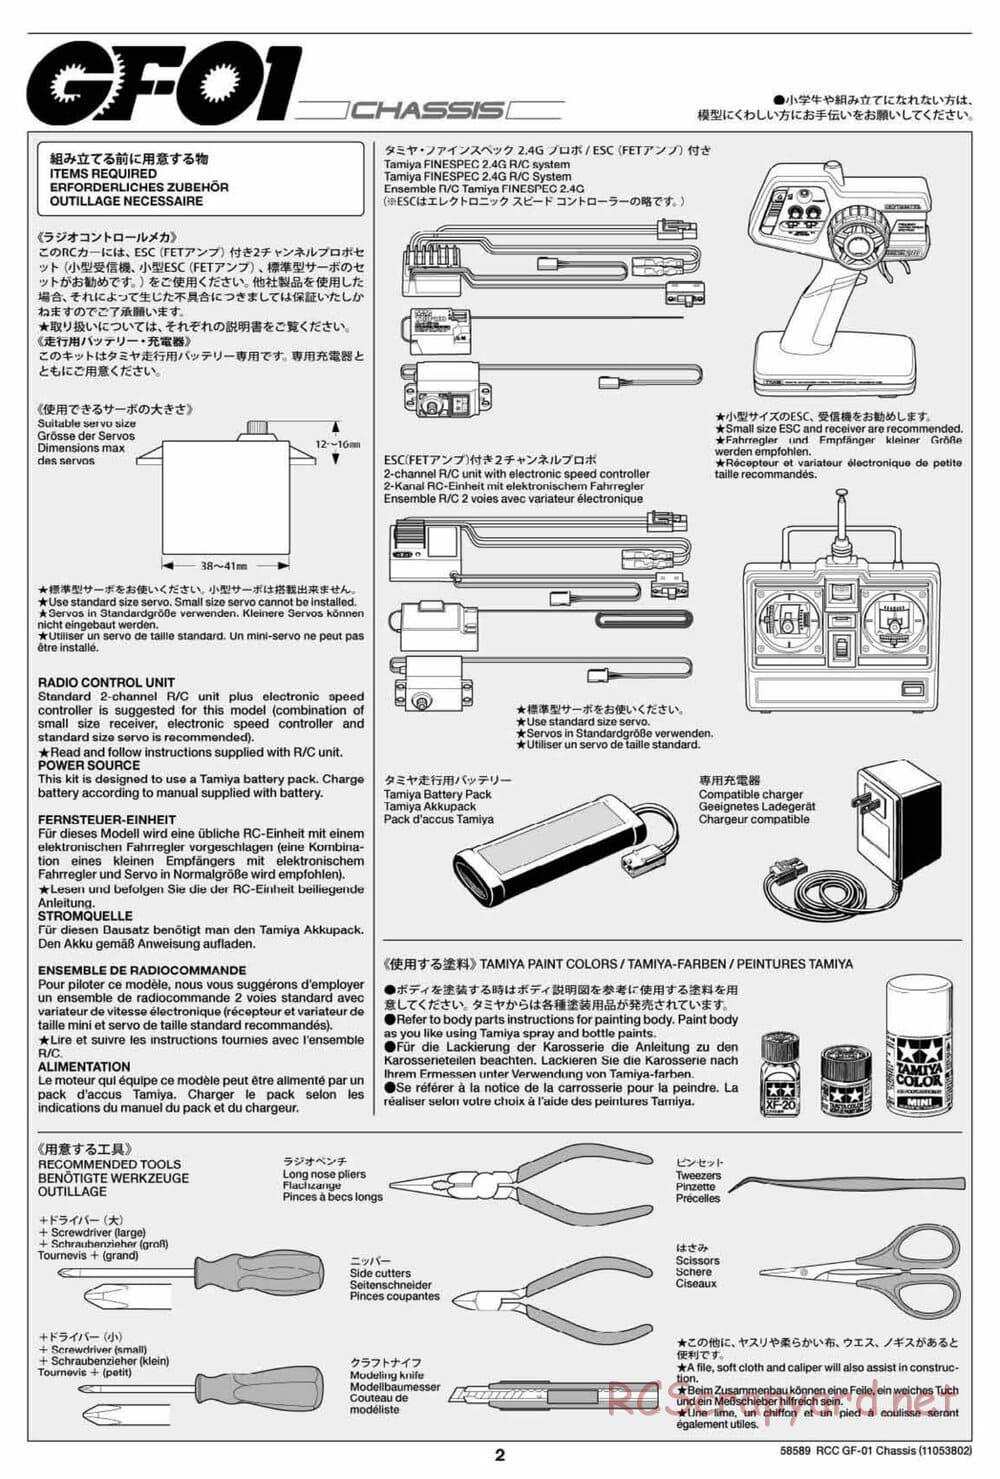 Tamiya - GF-01 Chassis - Manual - Page 2